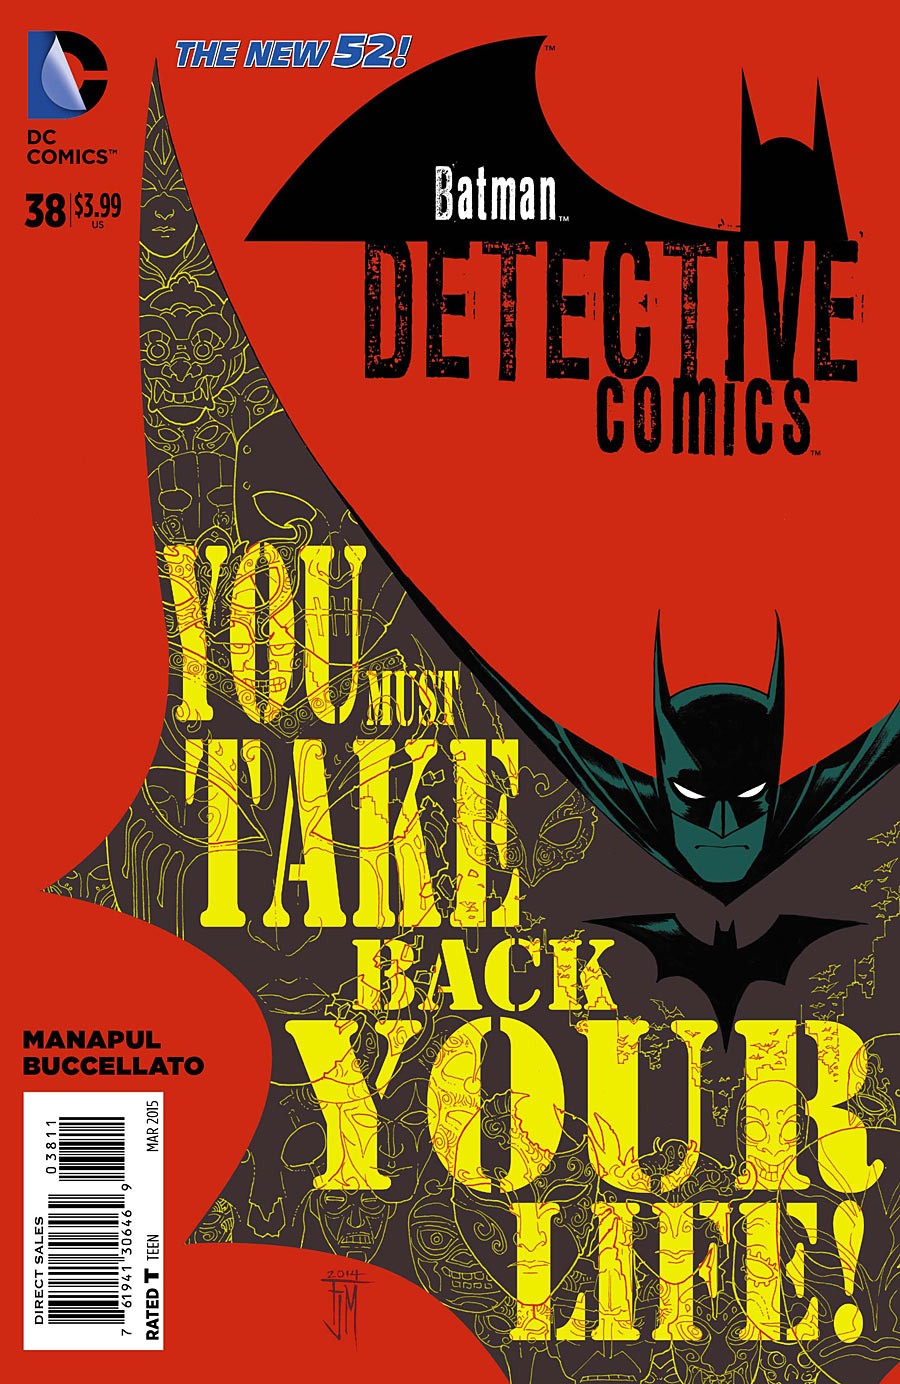 Detective Comics Vol. 2 #38